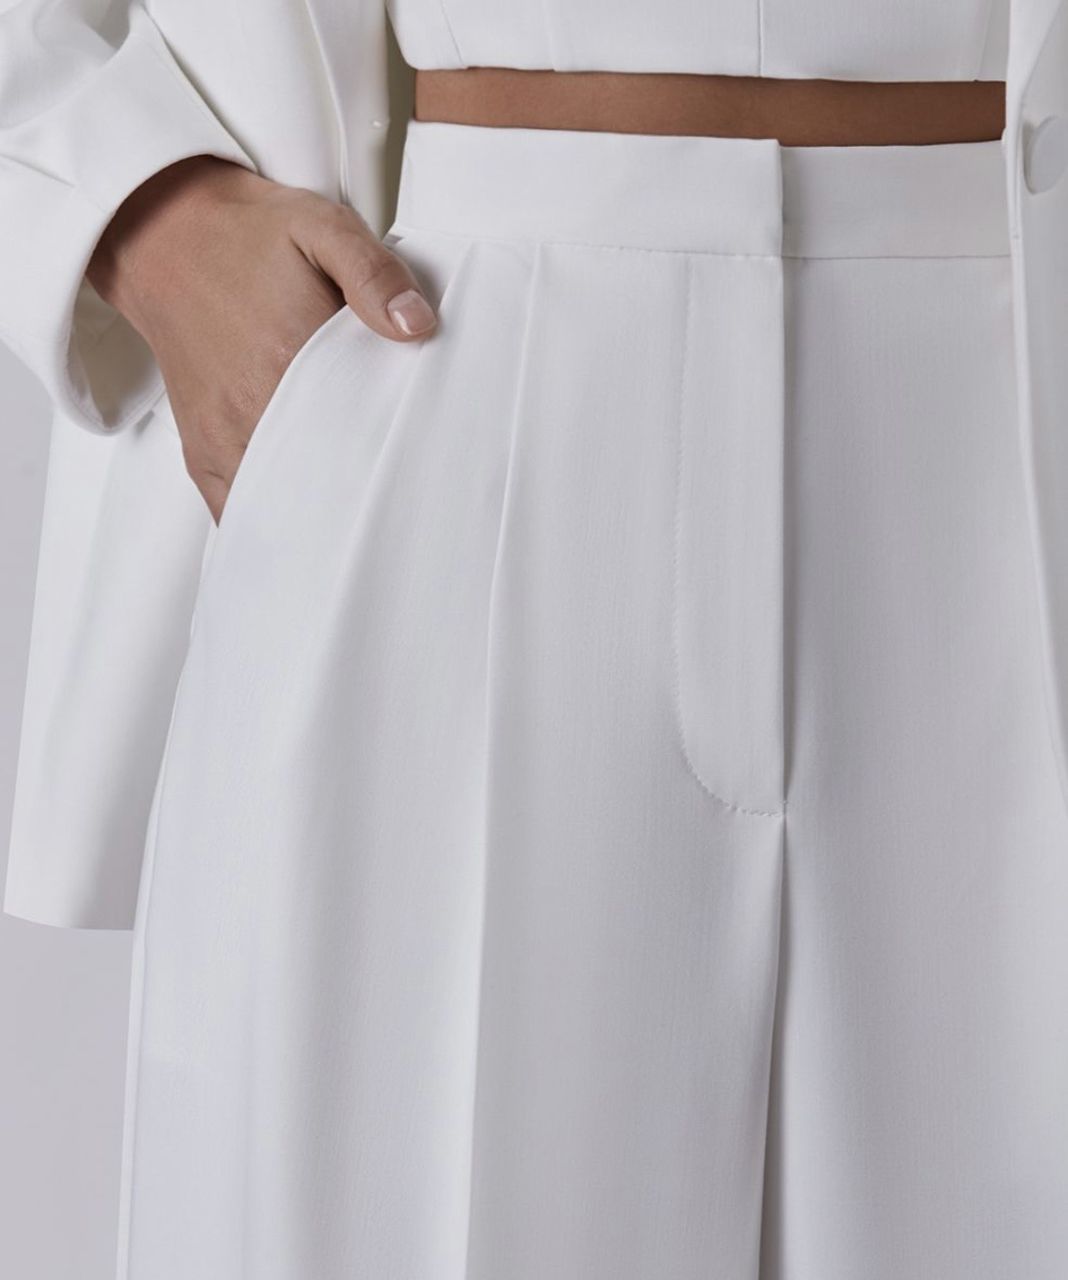 Новый белоснежный костюм, корсетный топ, широкие брюки. foto 4